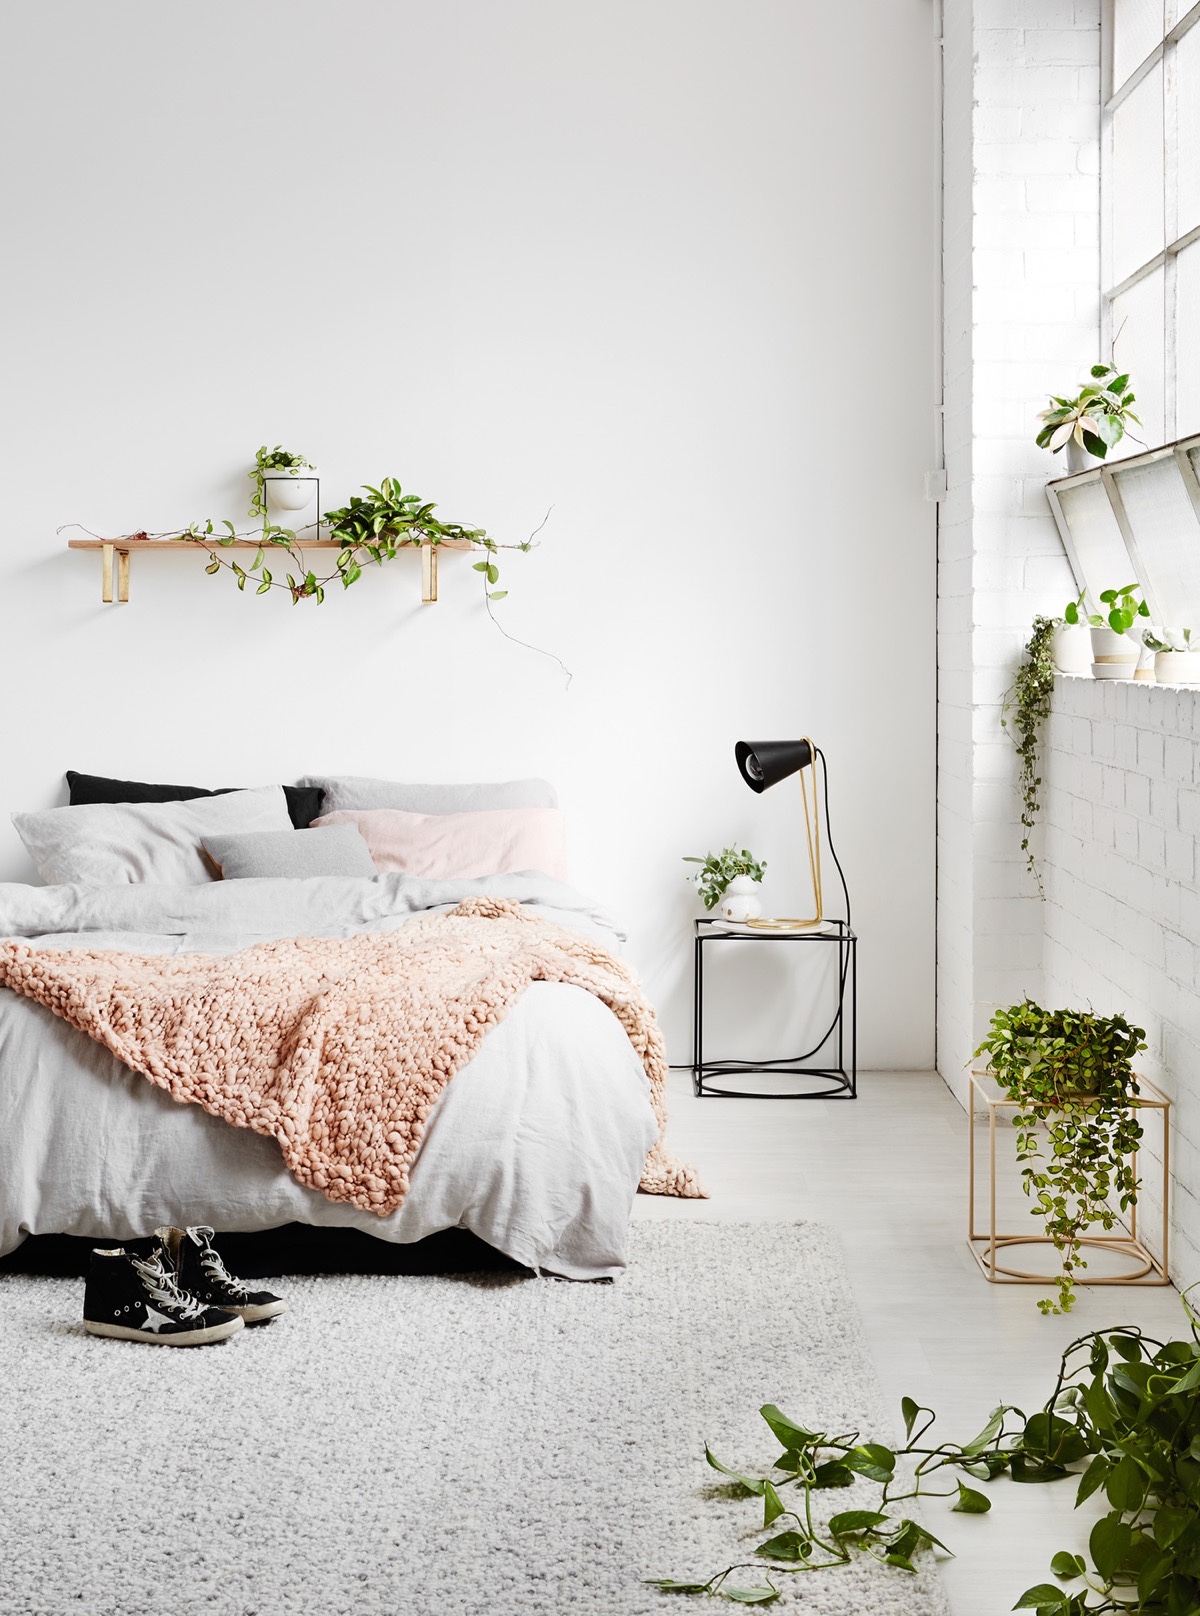 Màu trắng cung cấp một bối cảnh lý tưởng cho những người muốn trồng cây xanh trong phòng ngủ.